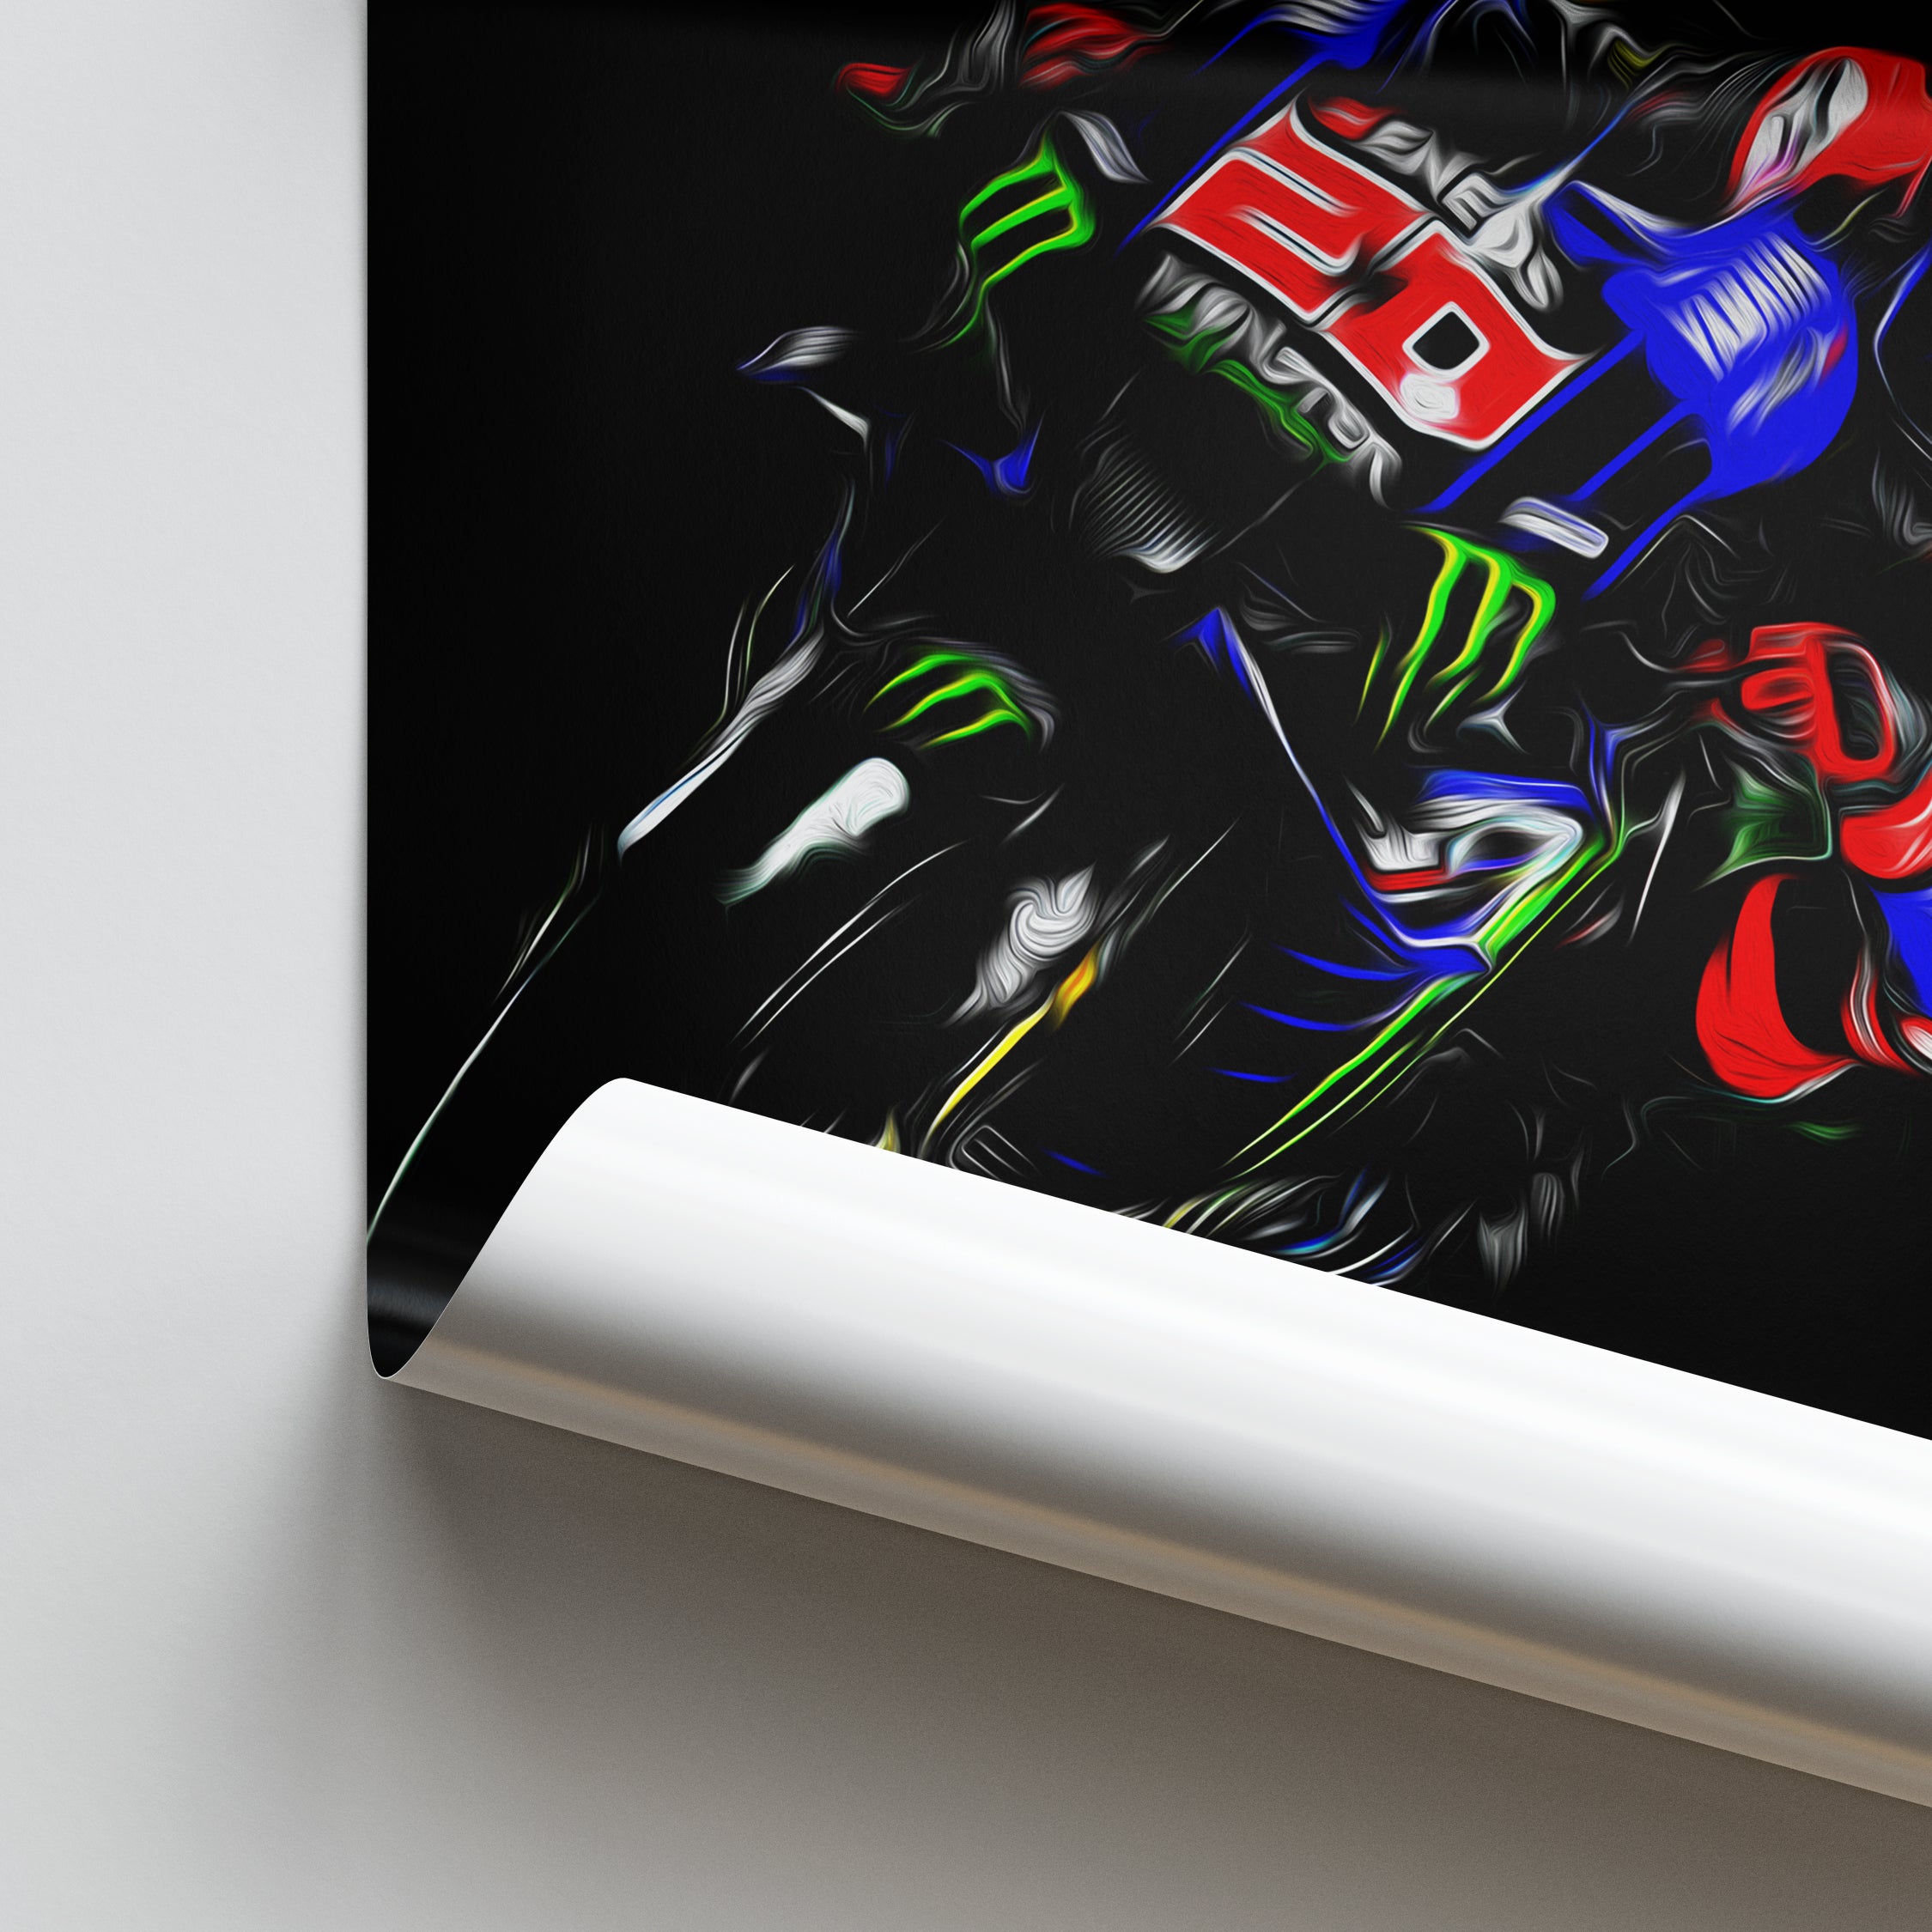 Yamaha YZR-M1, Fabio Quartararo 2021 - MotoGP Print